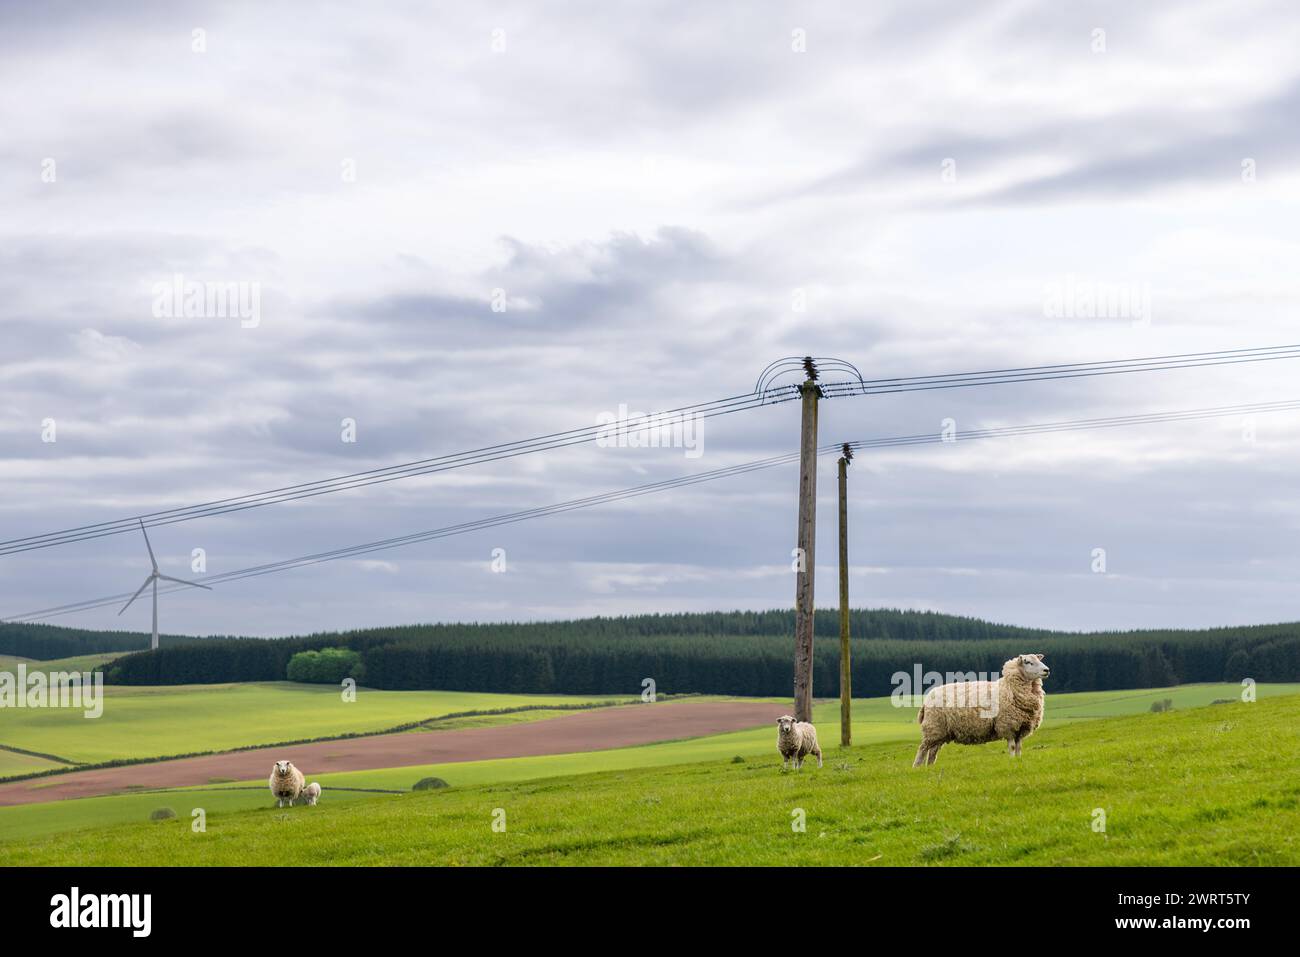 Üppige Felder Schottlands, Schafe mit ihren Lämmern durchstreifen frei, mit dem Kontrast von Stromleitungen und einer einsamen Windturbine, die den Übergang unterstreicht Stockfoto